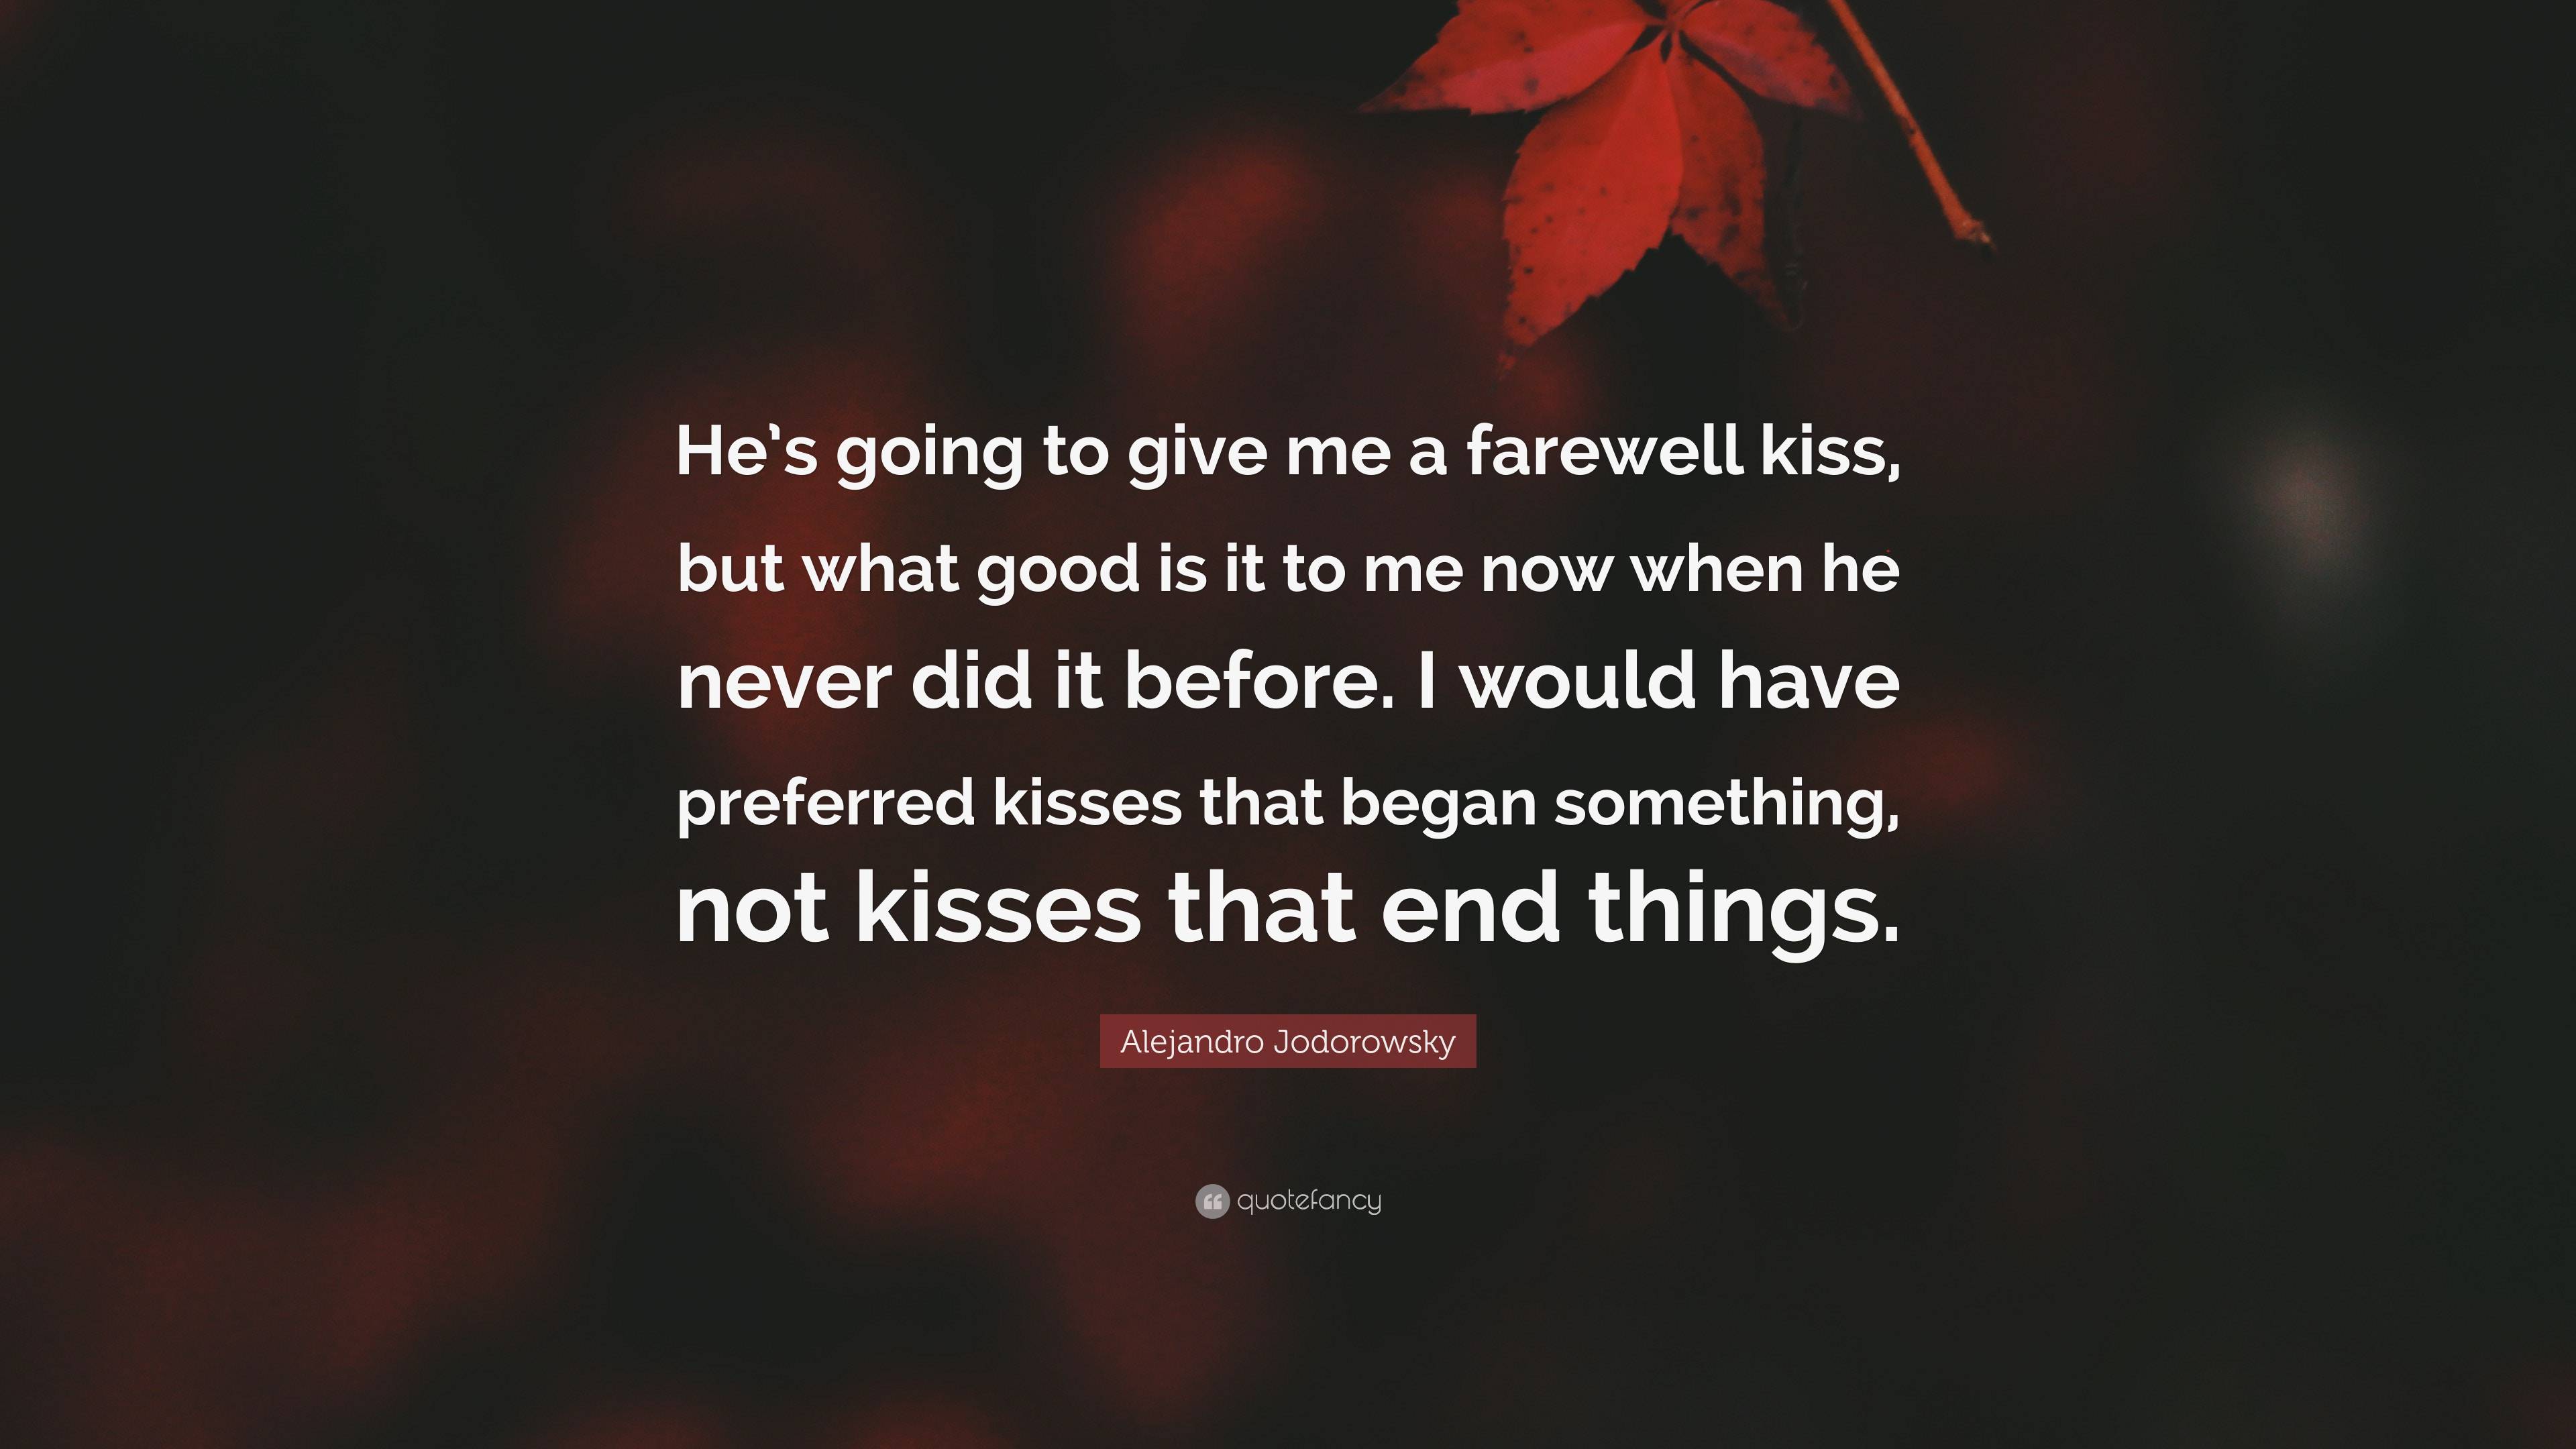 A Farewell kiss